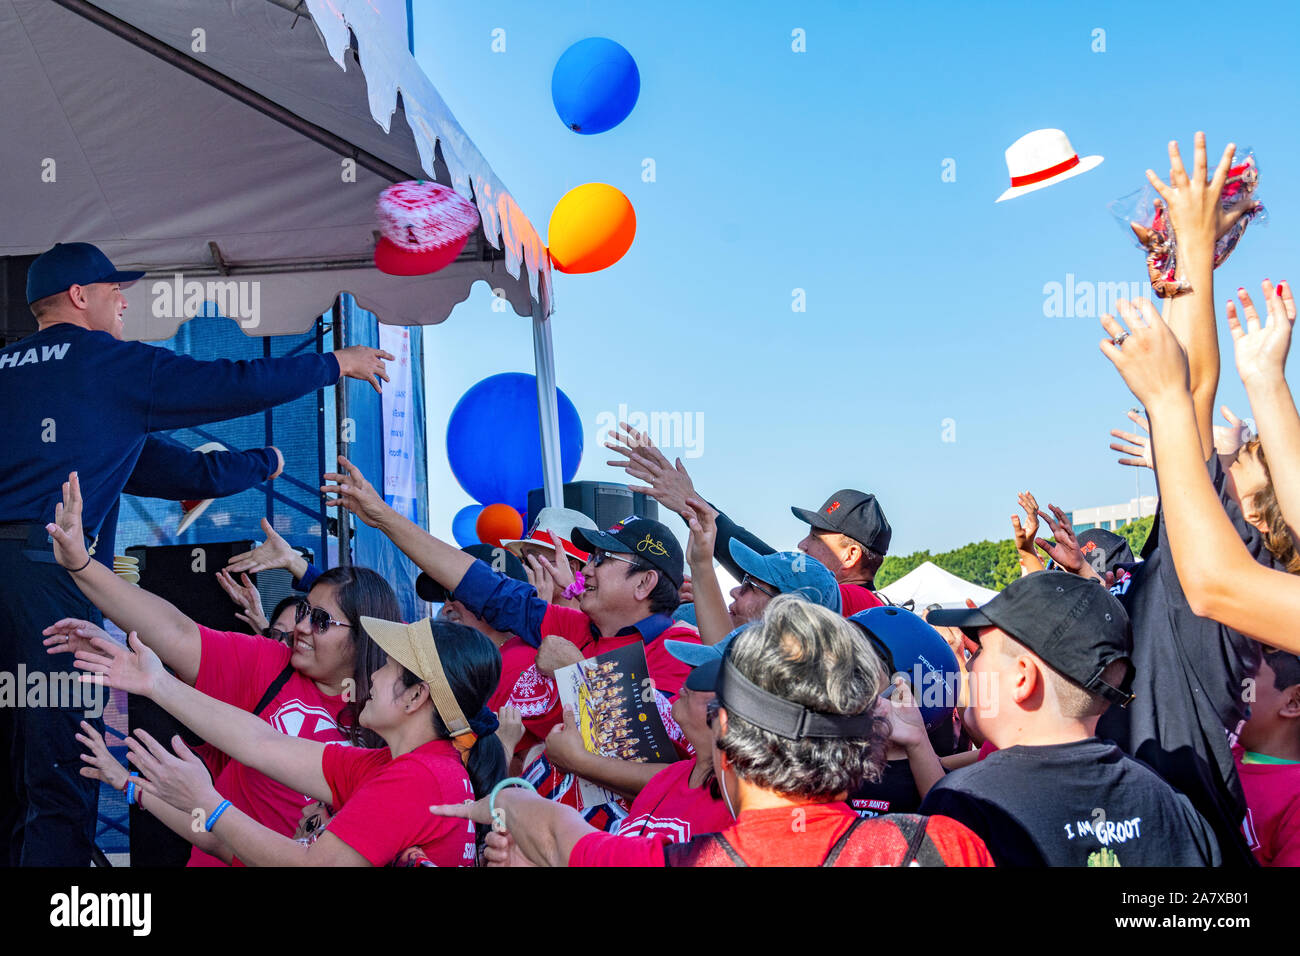 Anaheim, CA/USA - Nov 3, 2019: Freiwillige werfen Hüte und andere Goodies von der Bühne auf die aufgeregte Masse unten. Hände greifen für die Preise. Stockfoto